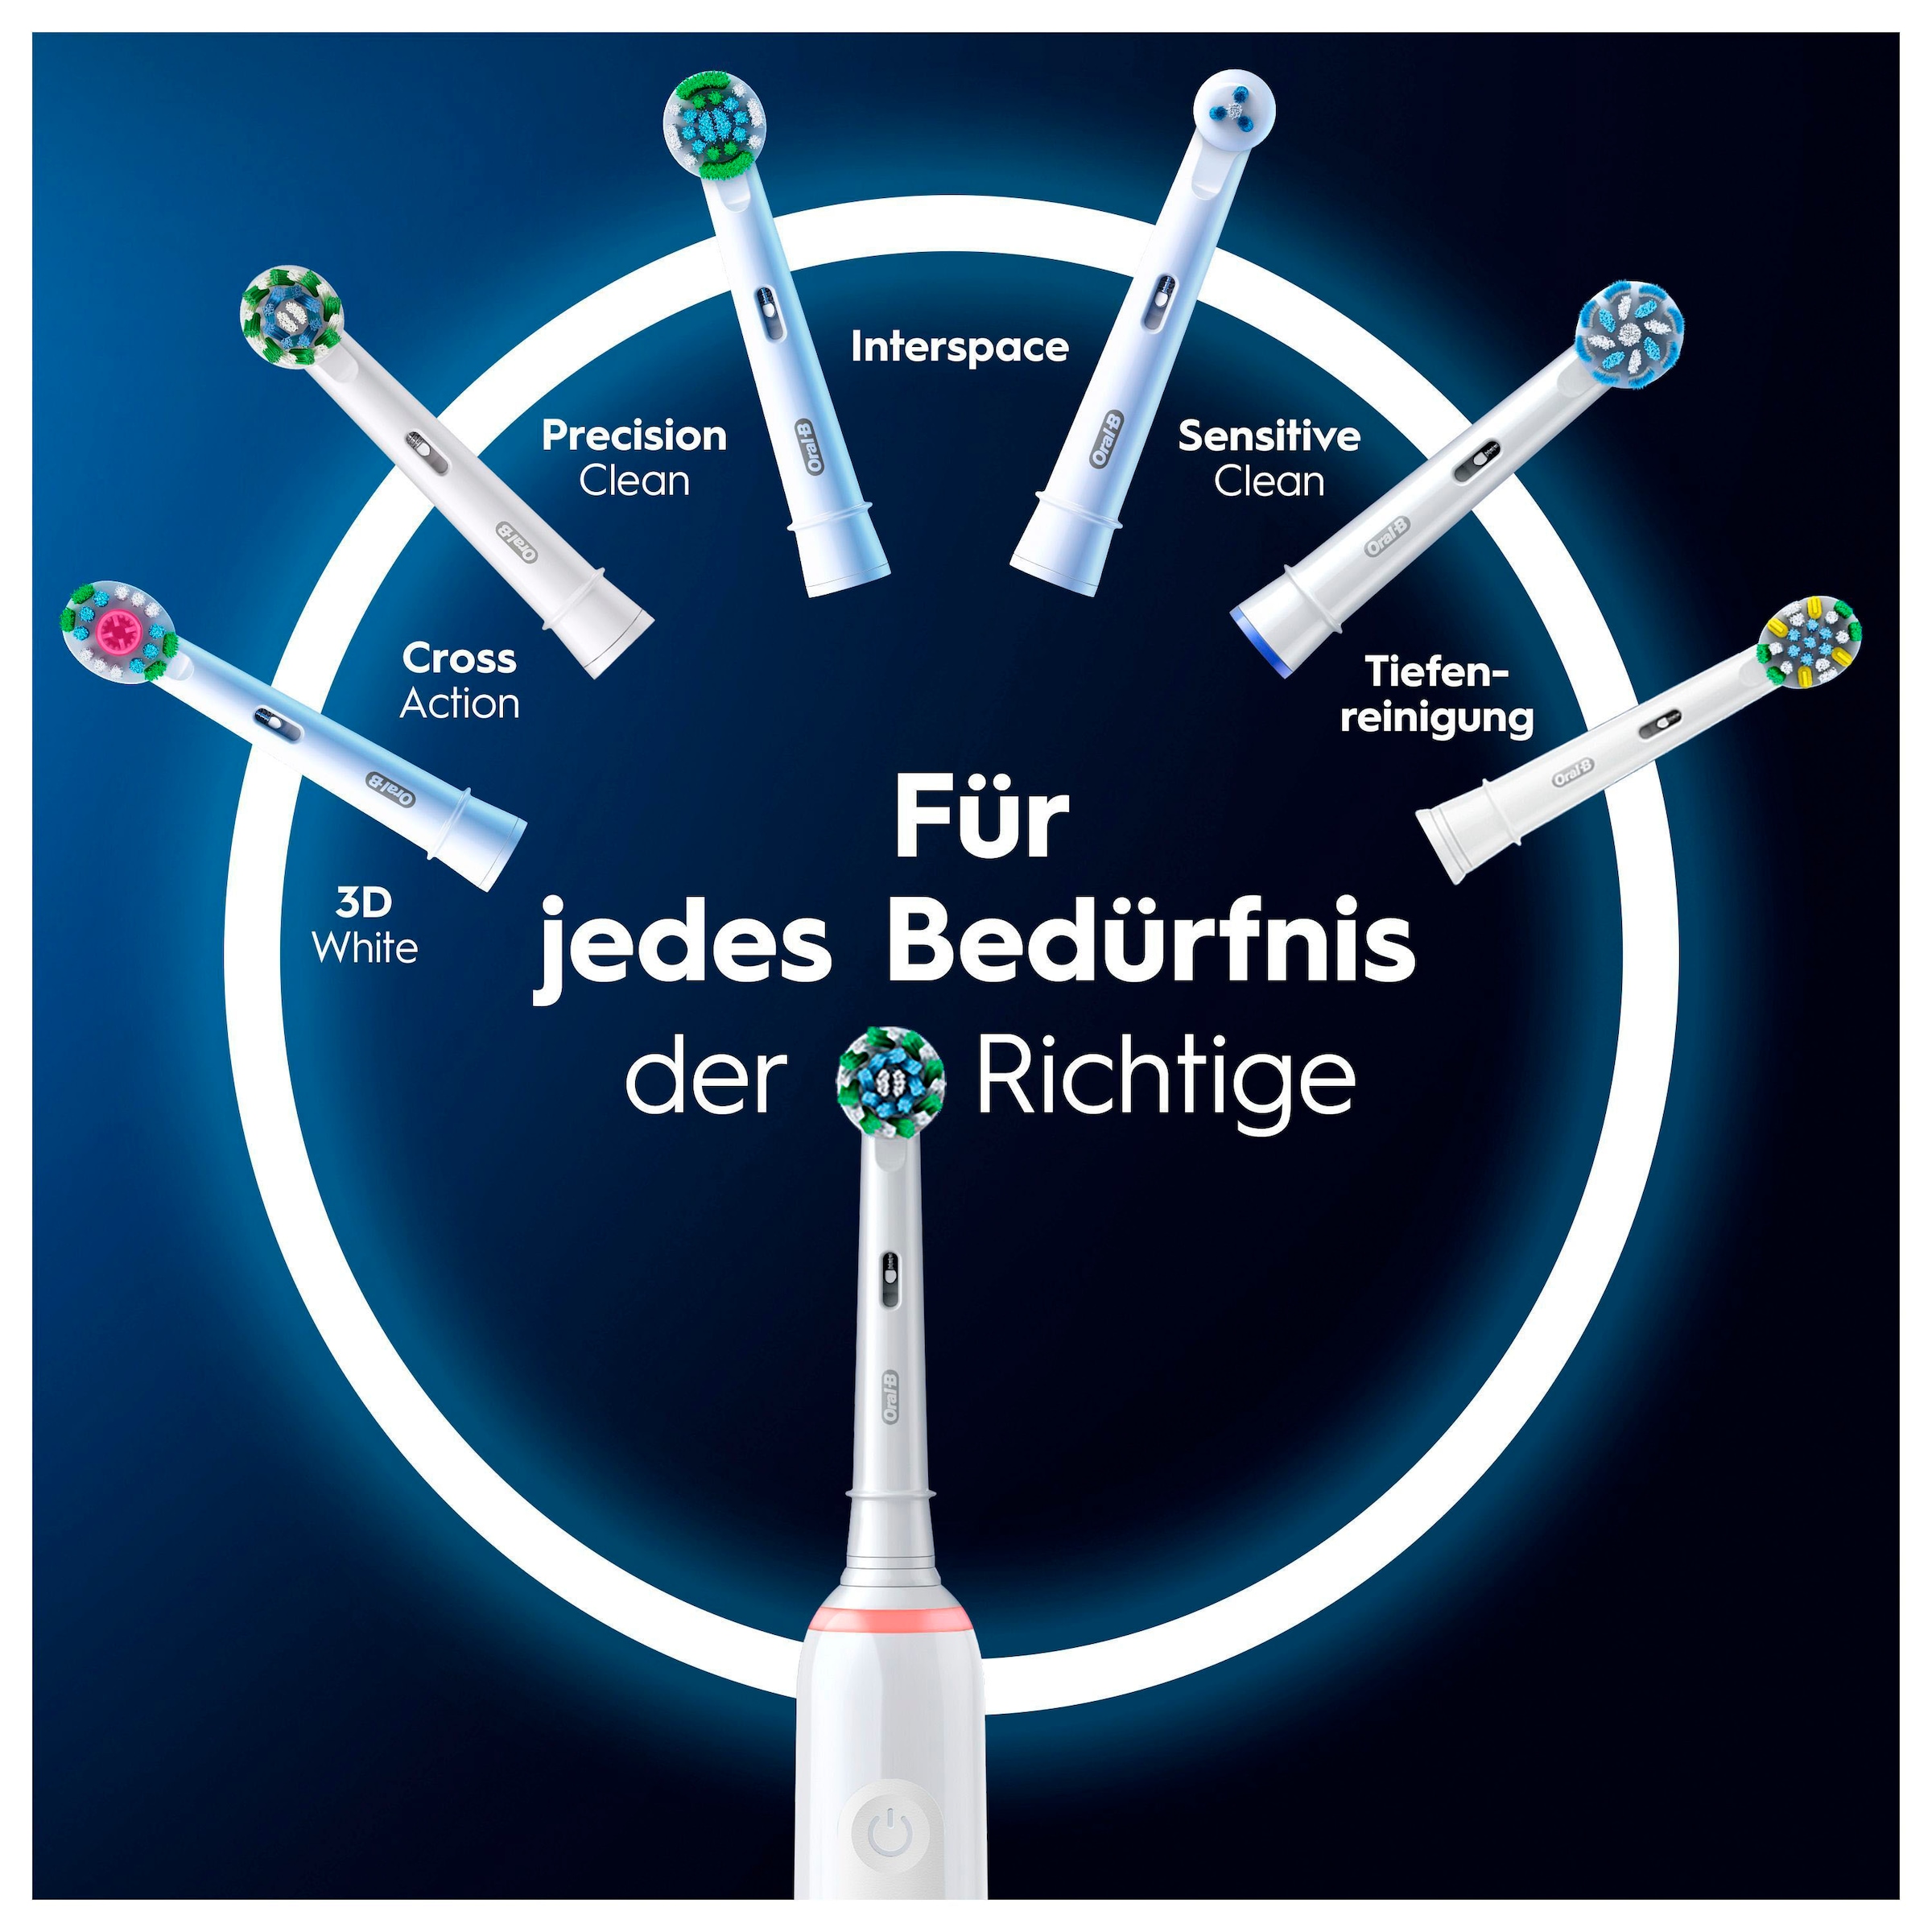 Oral-B Elektrische Zahnbürste »Pro 3 3500«, 2 St. Aufsteckbürsten, 3 Putzmodi